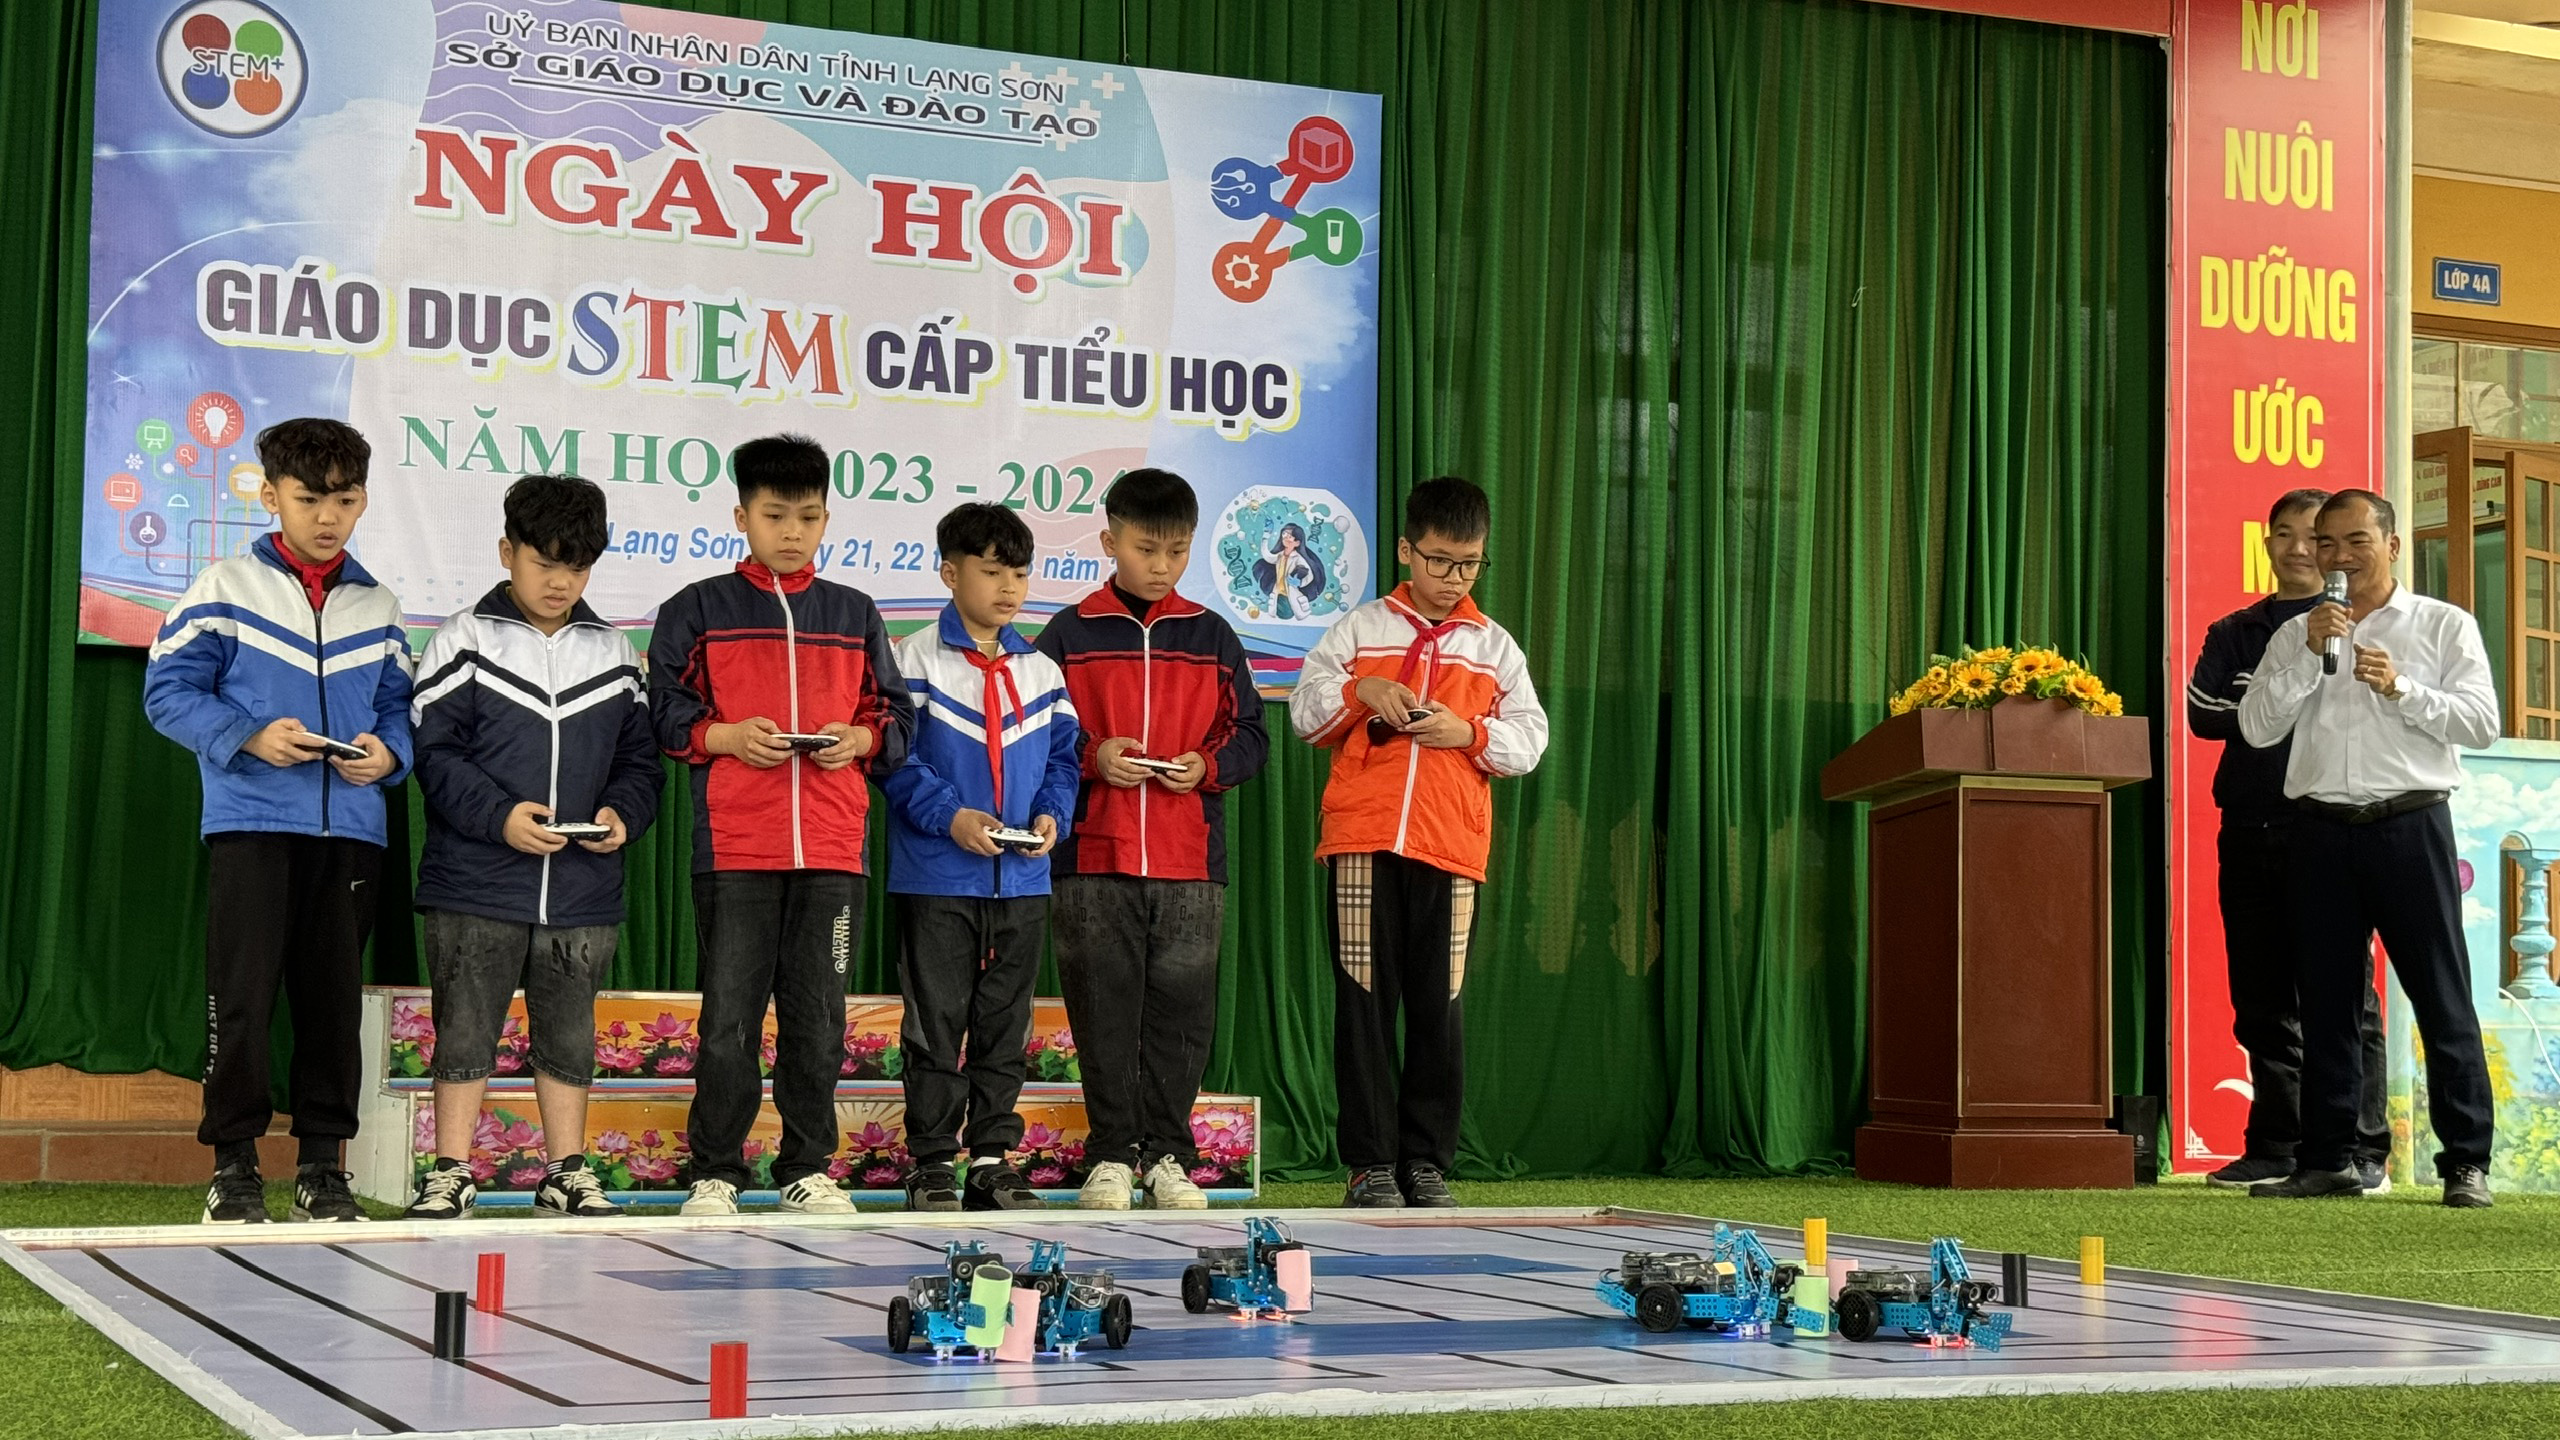 Lạng Sơn tổ chức thành công Ngày hội giáo dục STEM